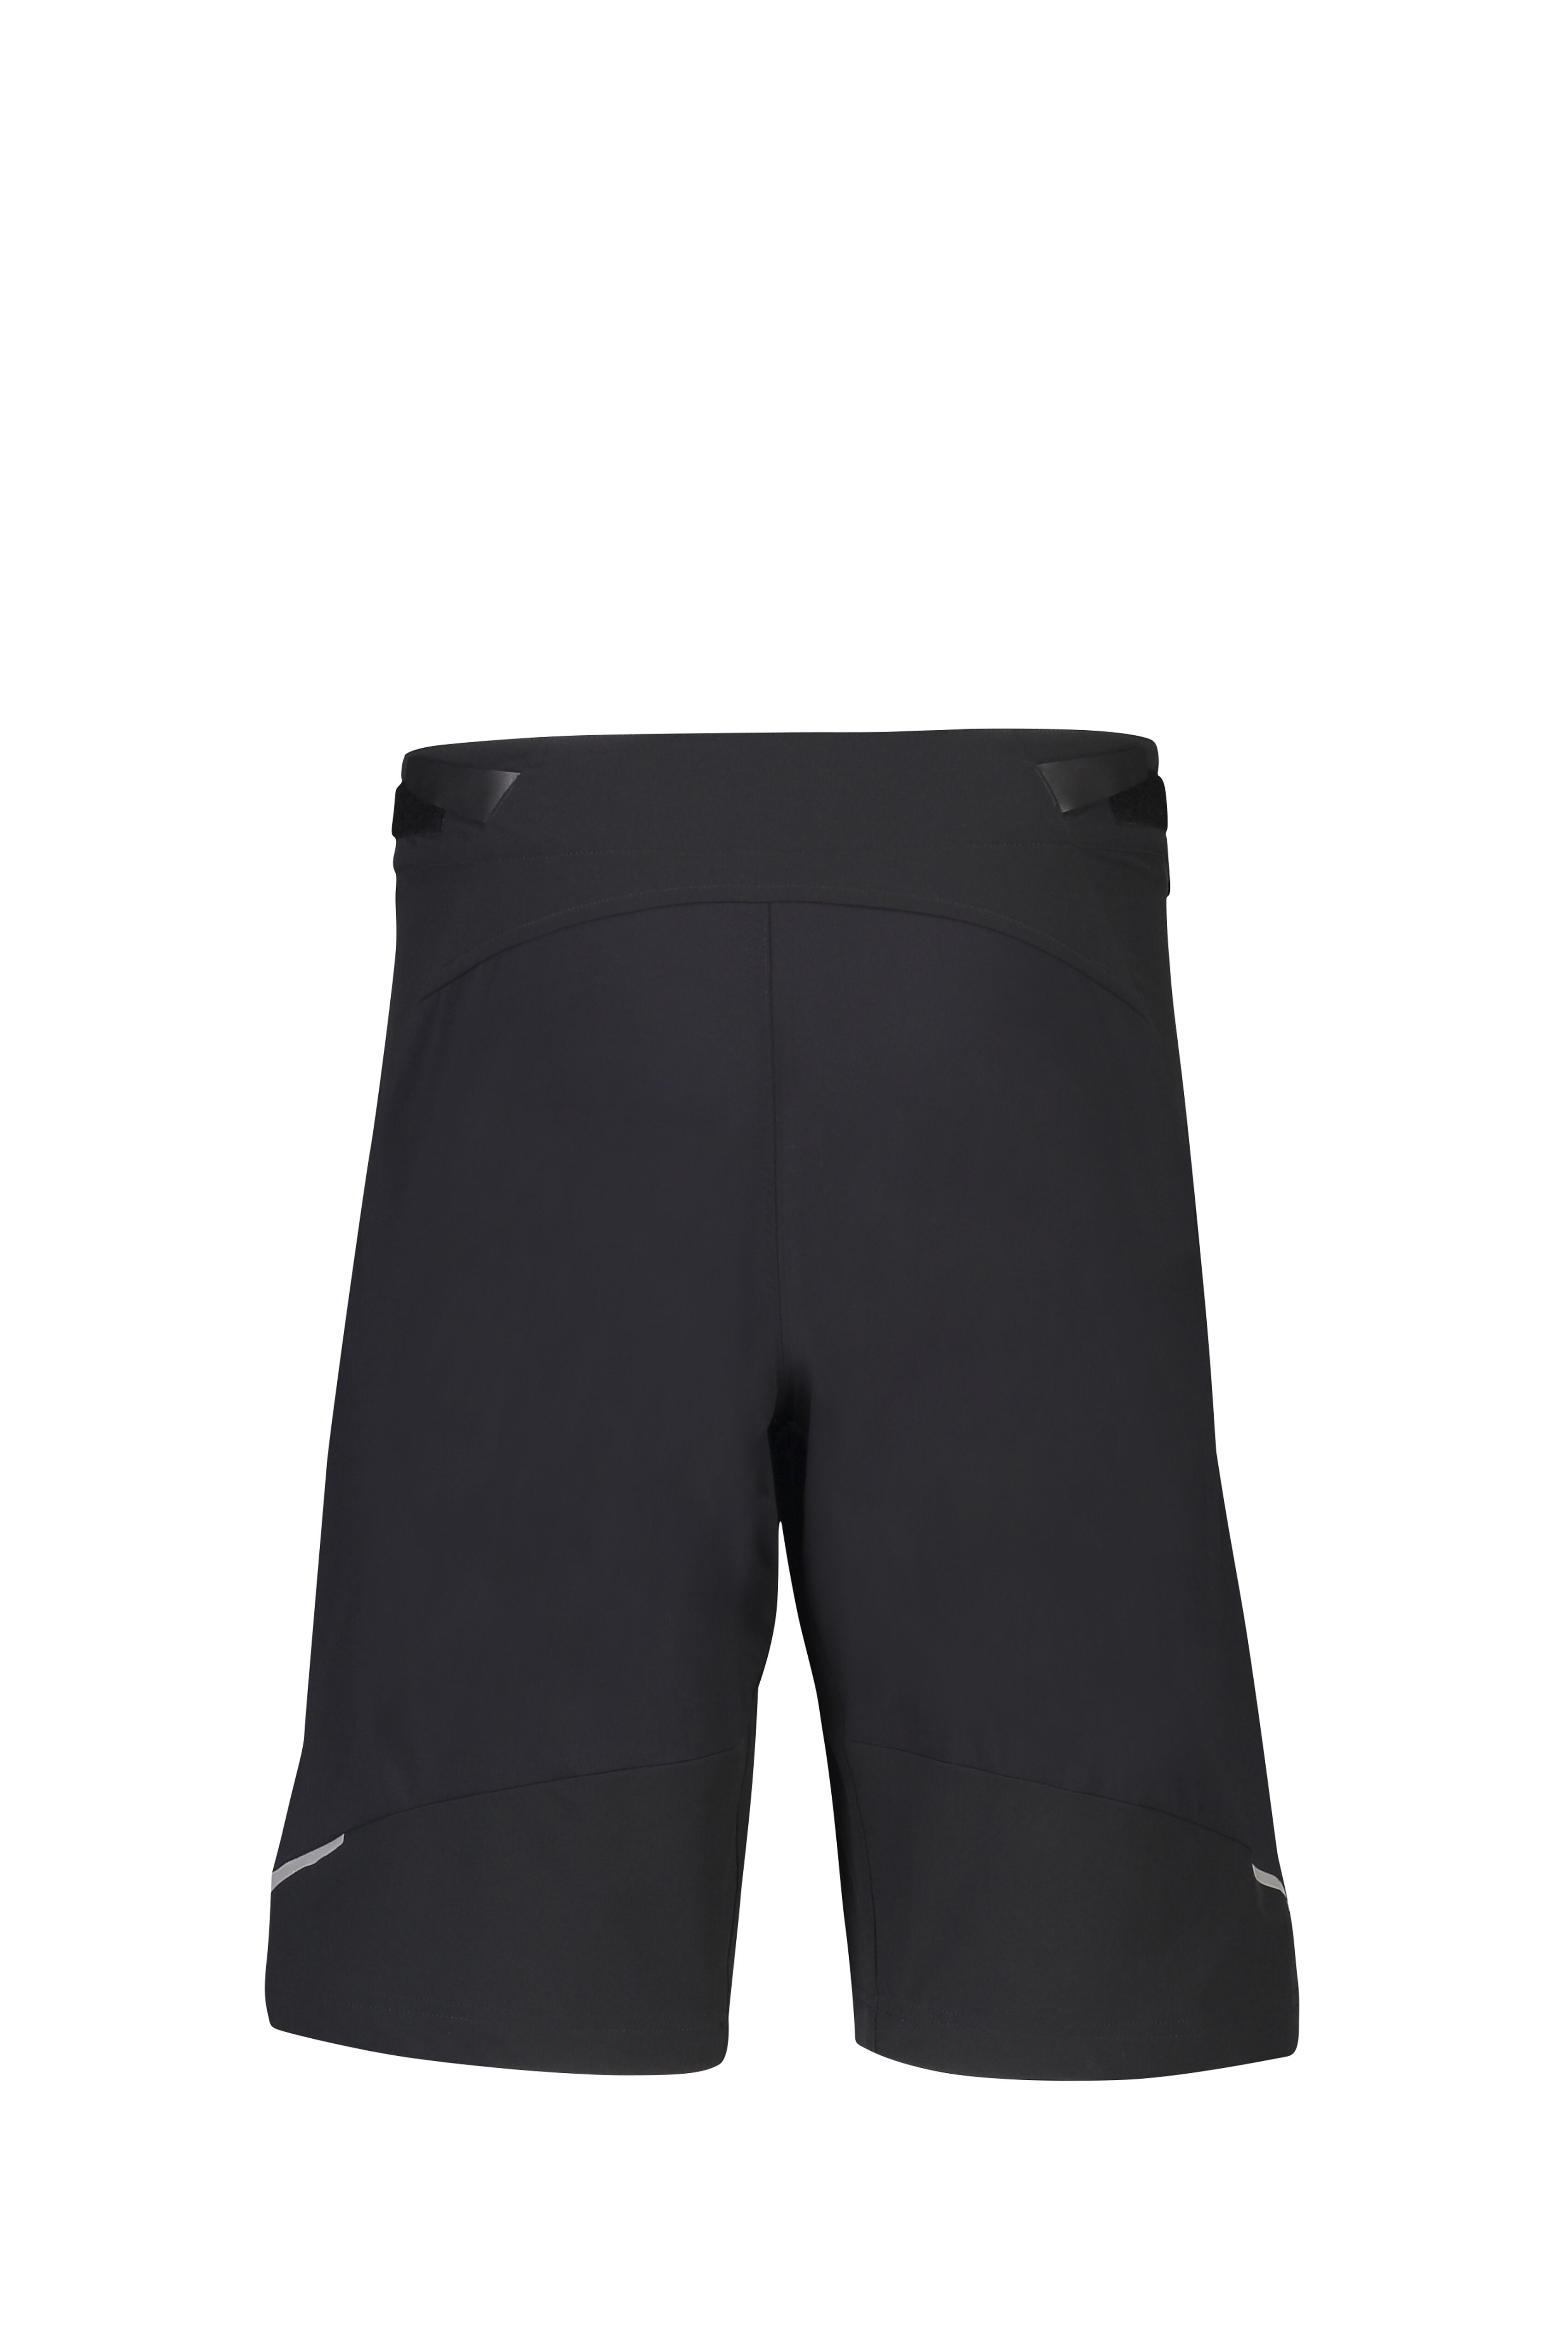 macpac mountain bike shorts